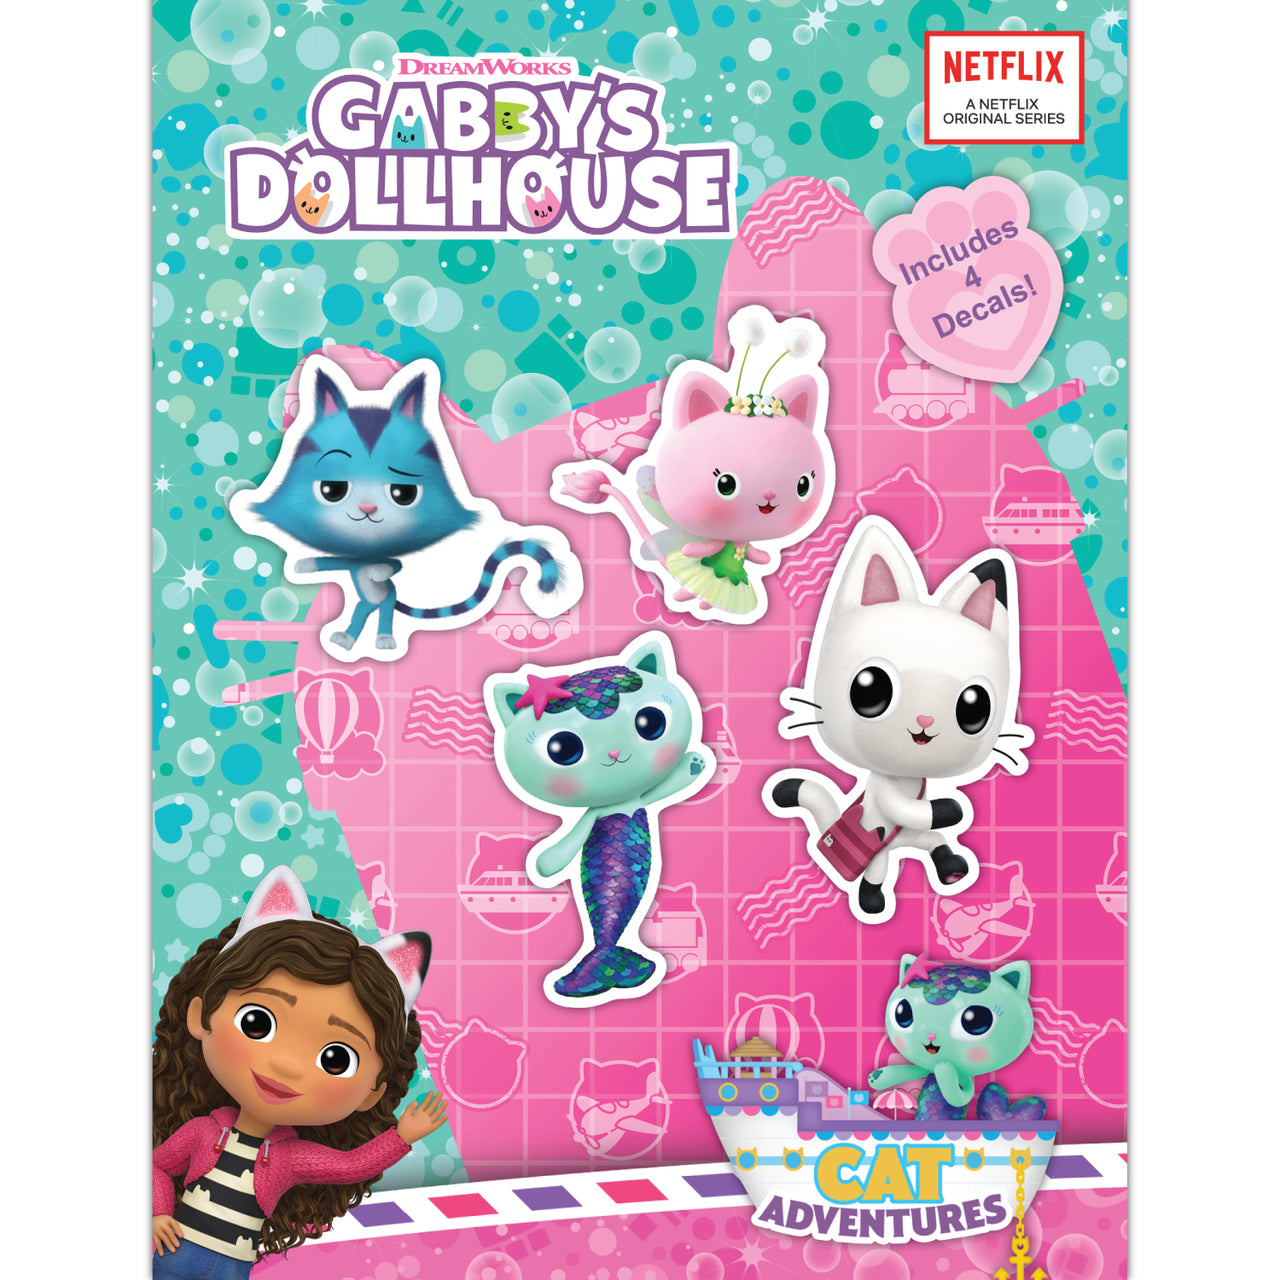 Gabby's Dollhouse: Cats